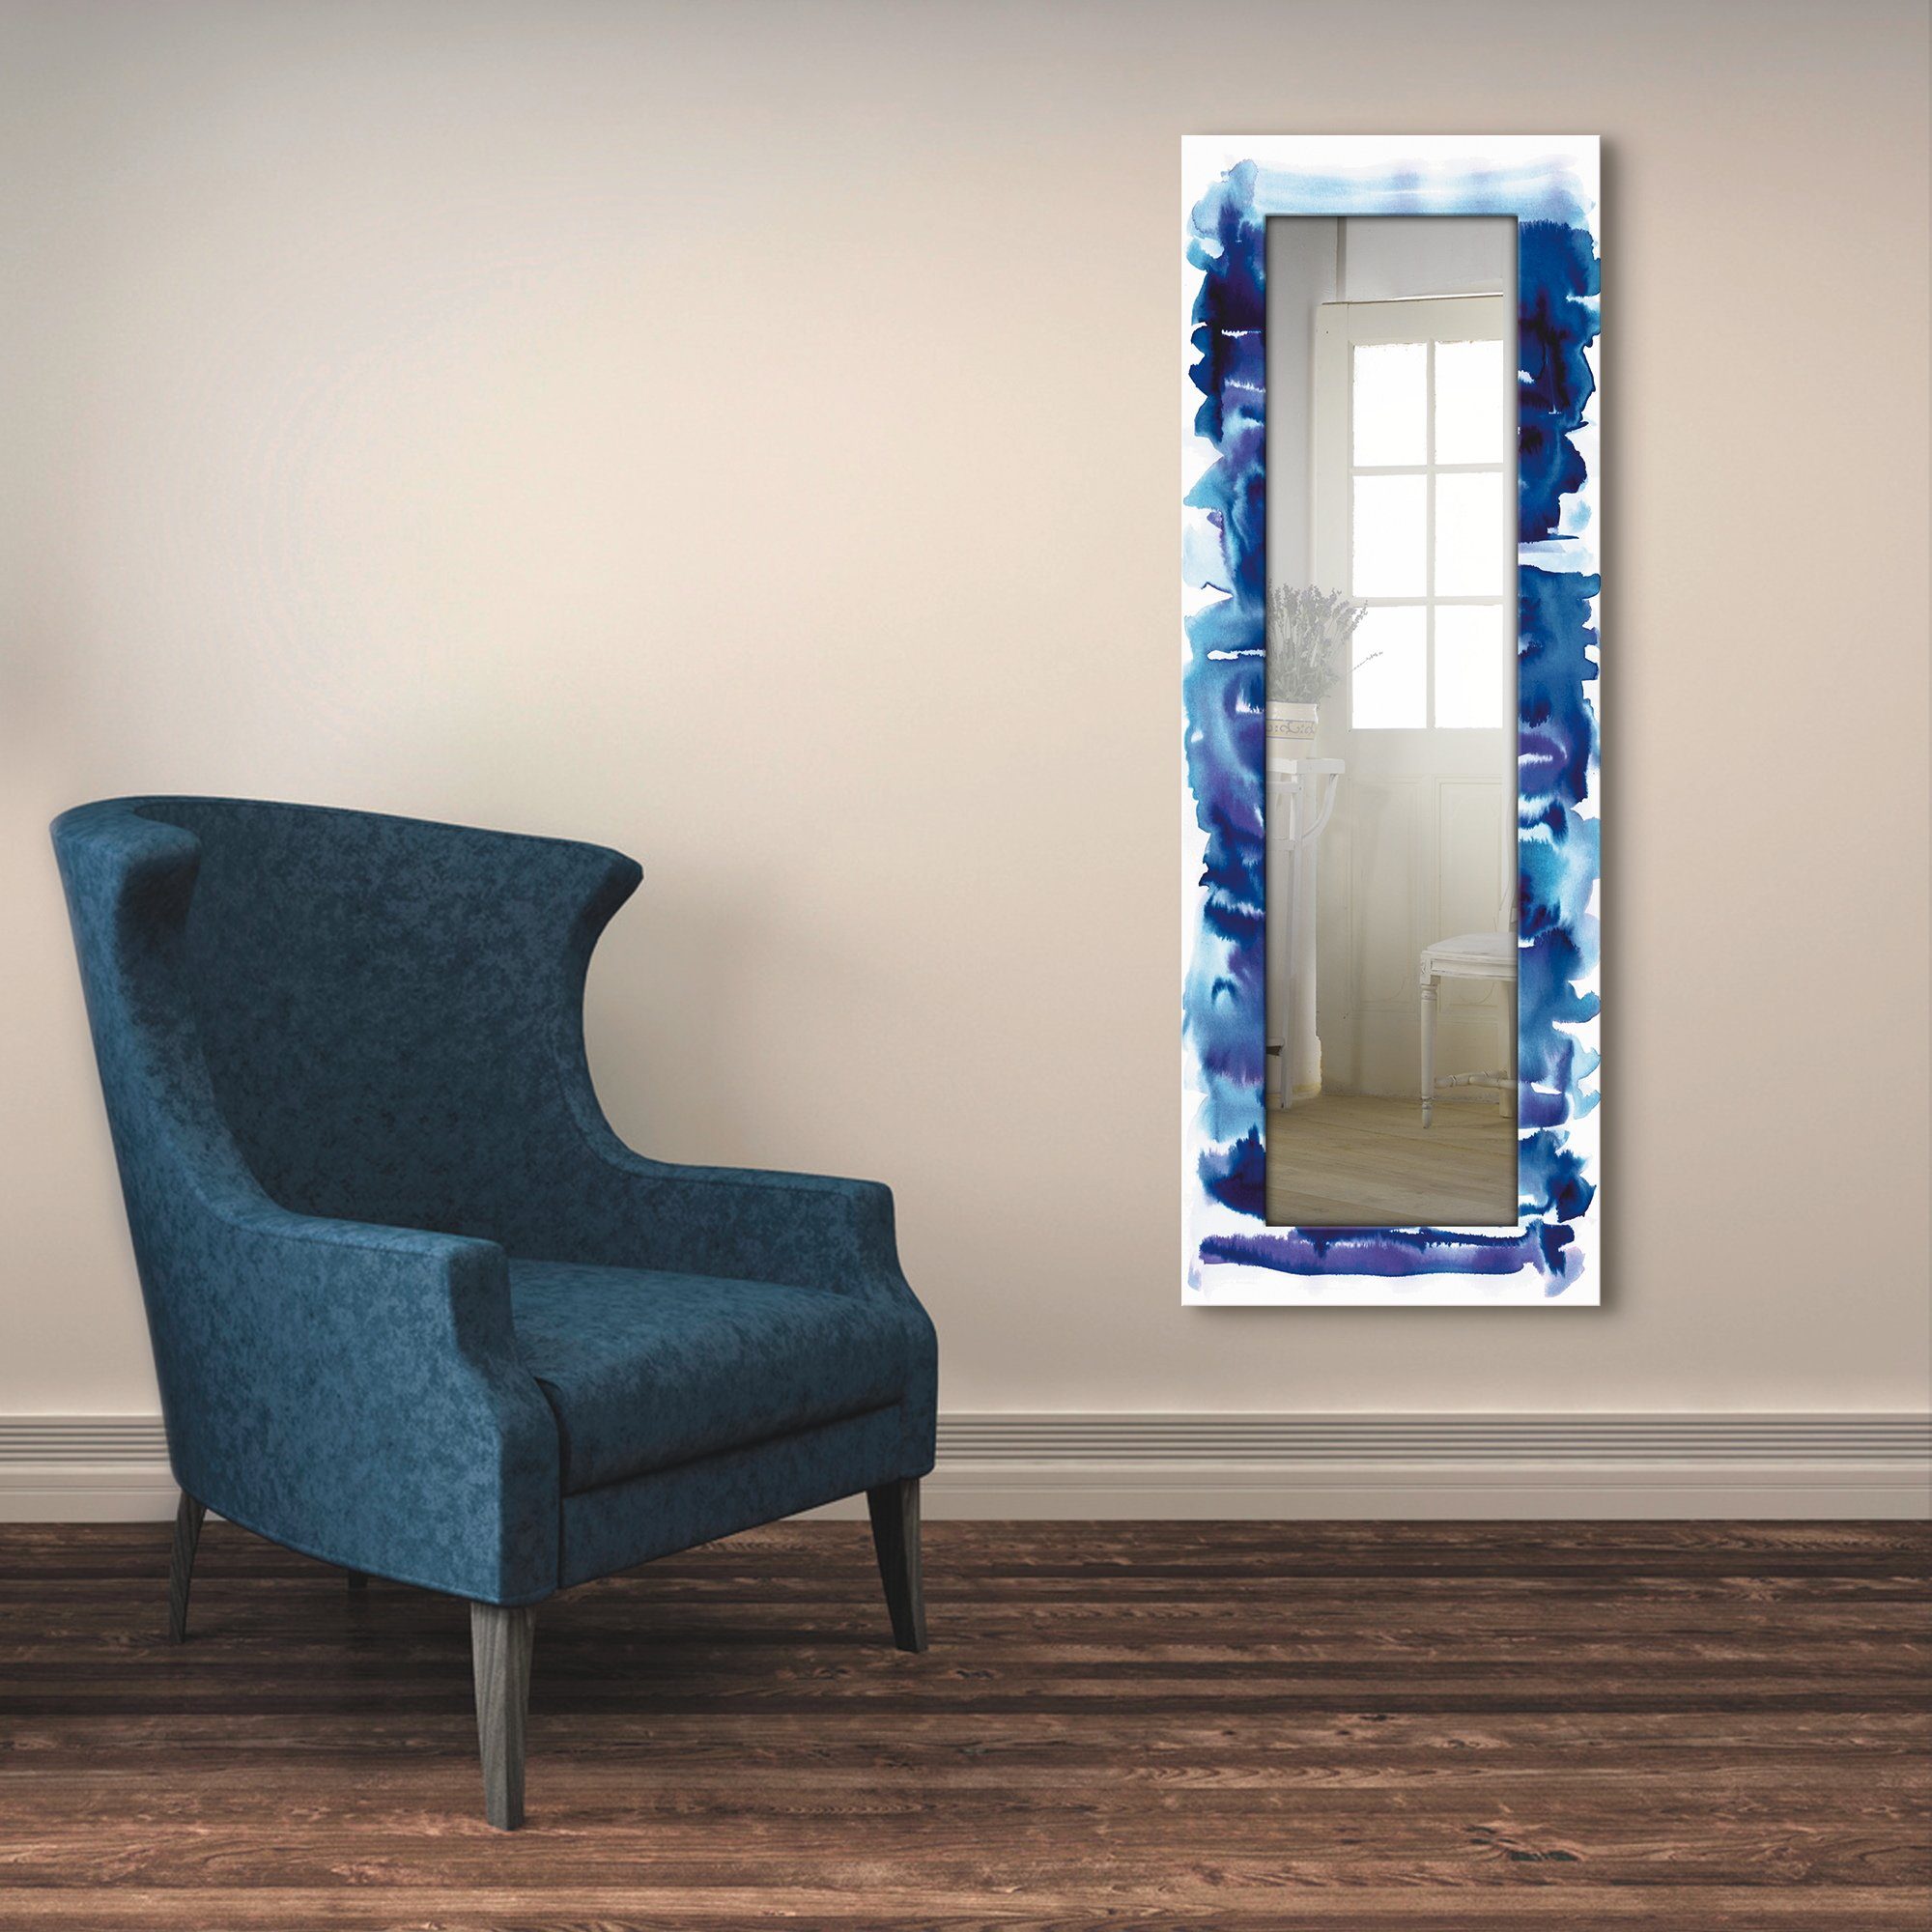 Artland Dekospiegel Aquarell in blau, gerahmter Ganzkörperspiegel, Wandspiegel, mit Motivrahmen, Landhaus